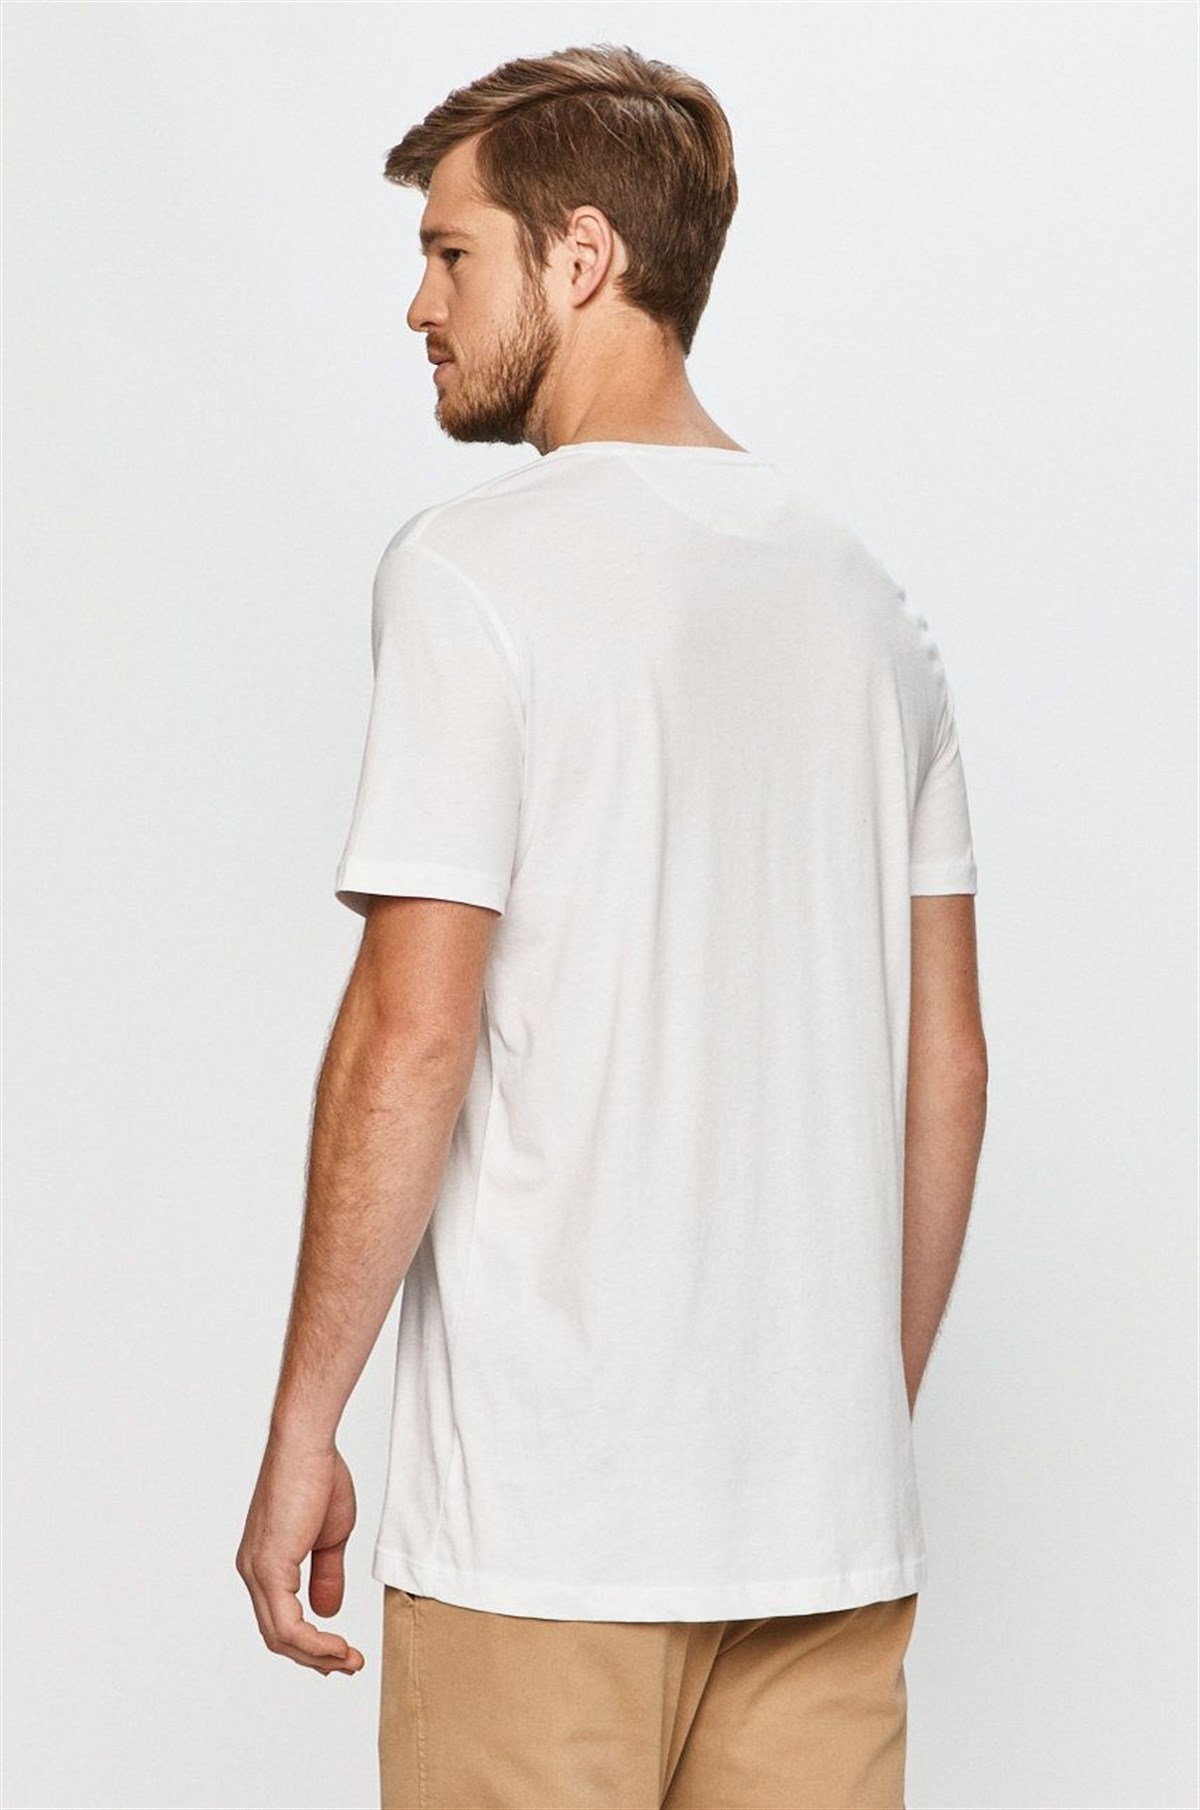 Erkek Basic T-Shirt |JOHN FRANK Basic Tişört Modelleri